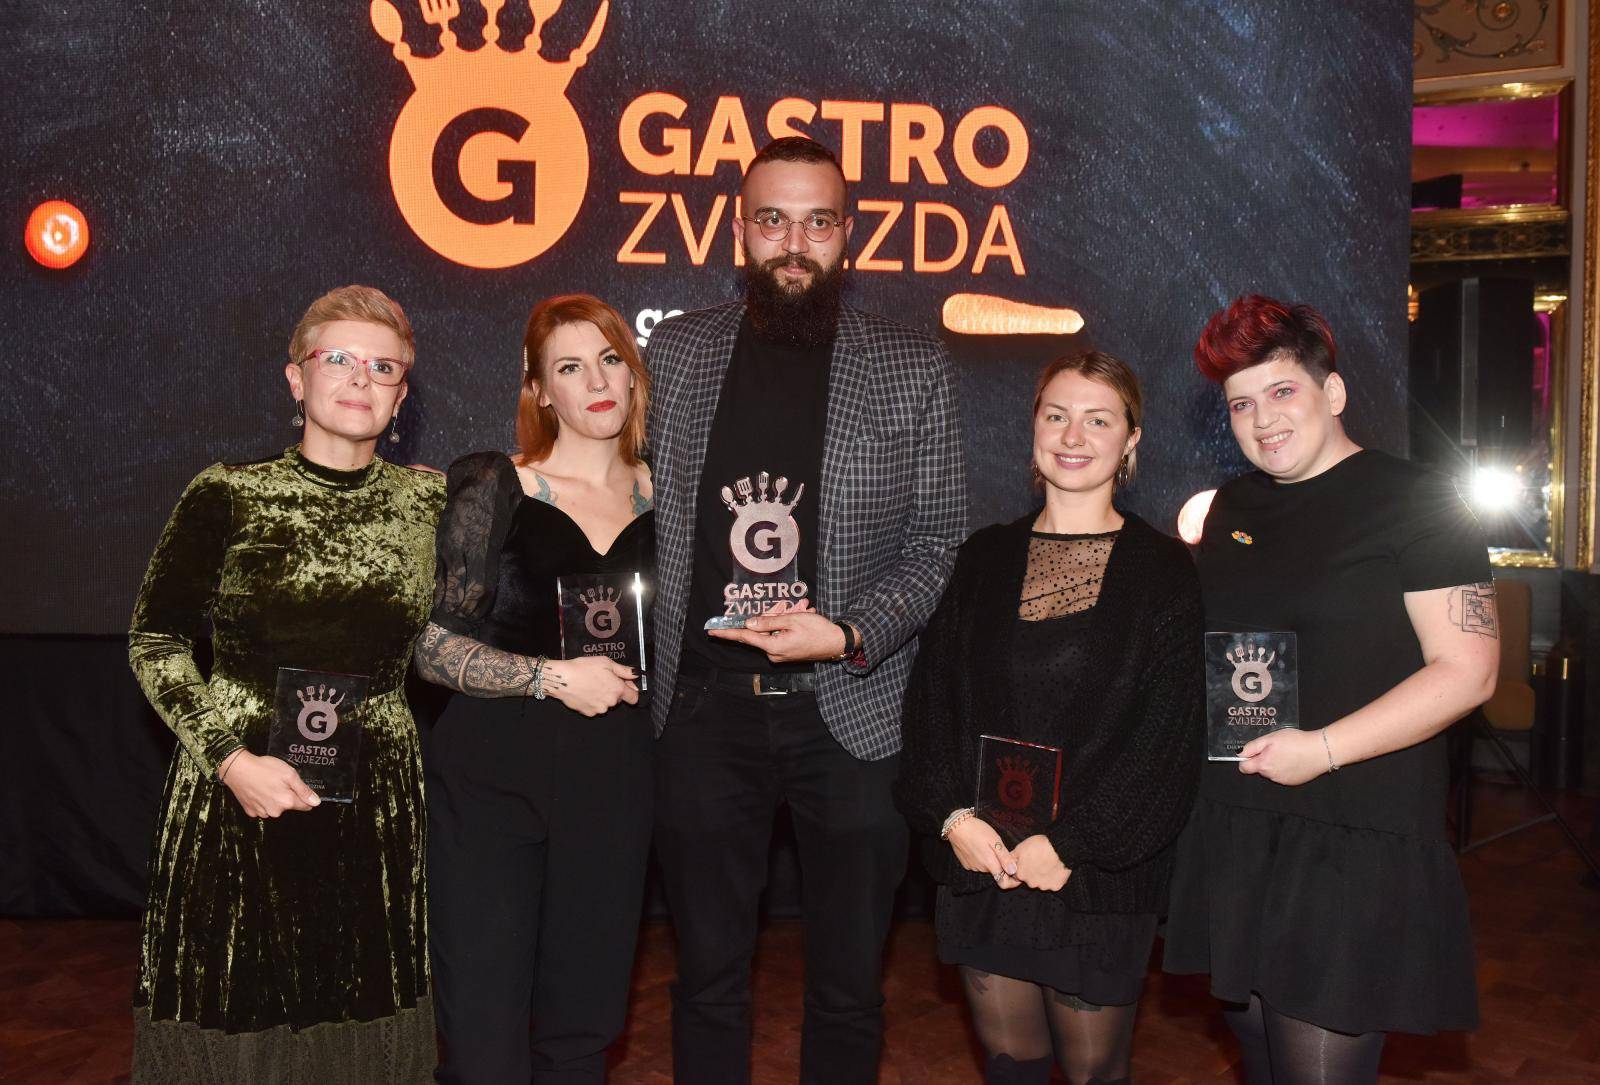 Hrvatska je dobila novu Gastro zvijezdu - Vedrana Boškovića!